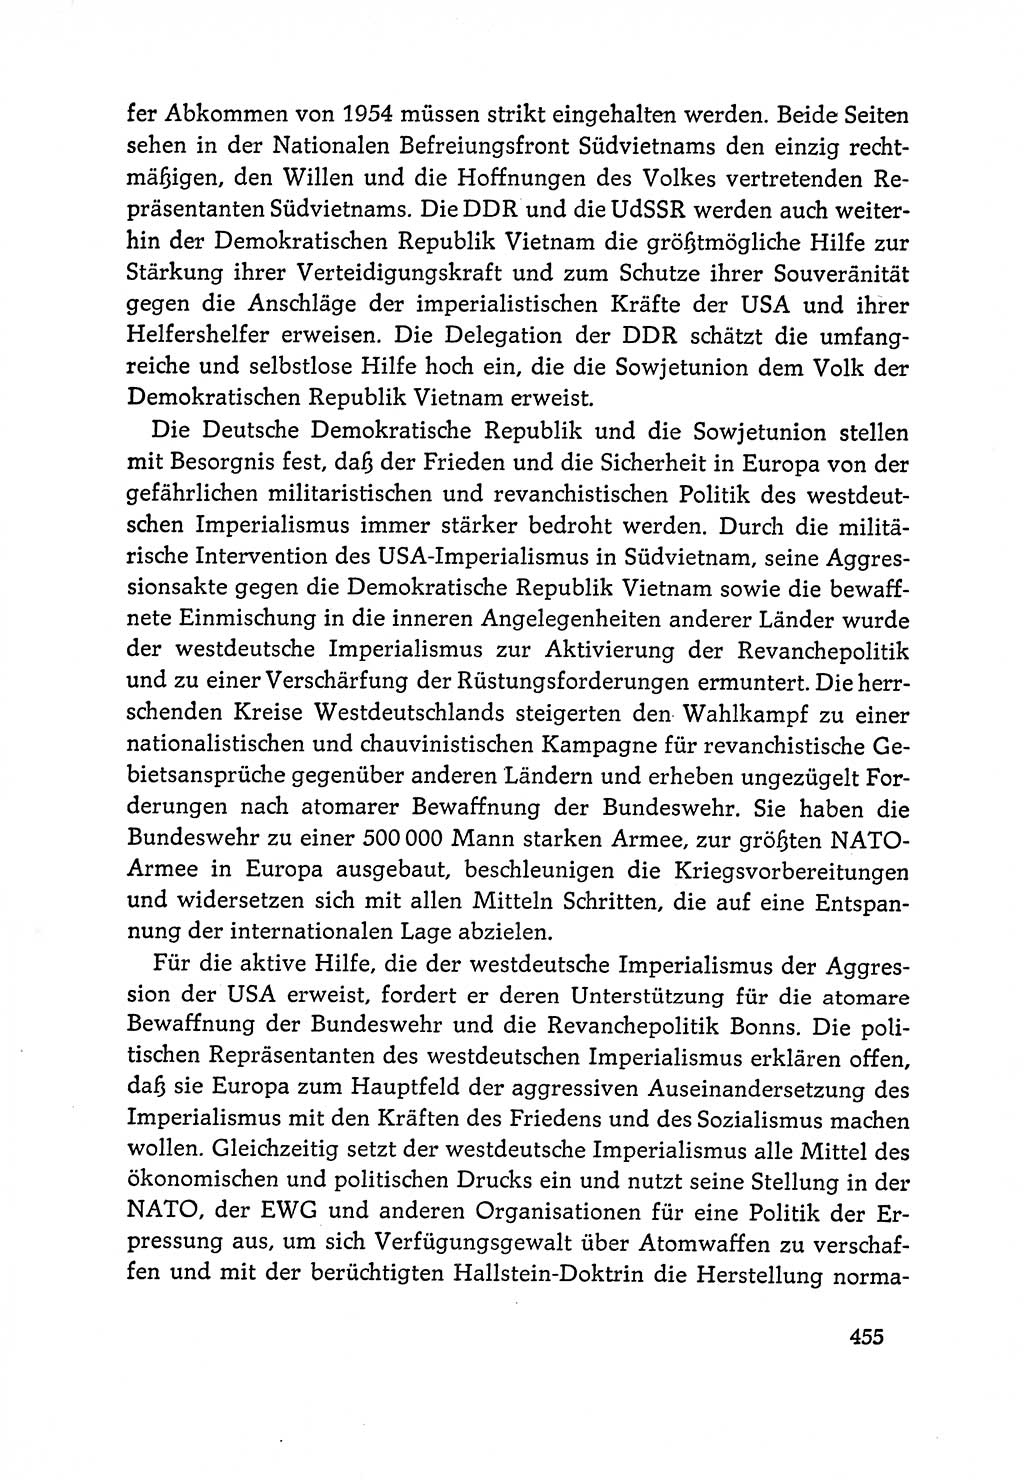 Dokumente der Sozialistischen Einheitspartei Deutschlands (SED) [Deutsche Demokratische Republik (DDR)] 1964-1965, Seite 455 (Dok. SED DDR 1964-1965, S. 455)